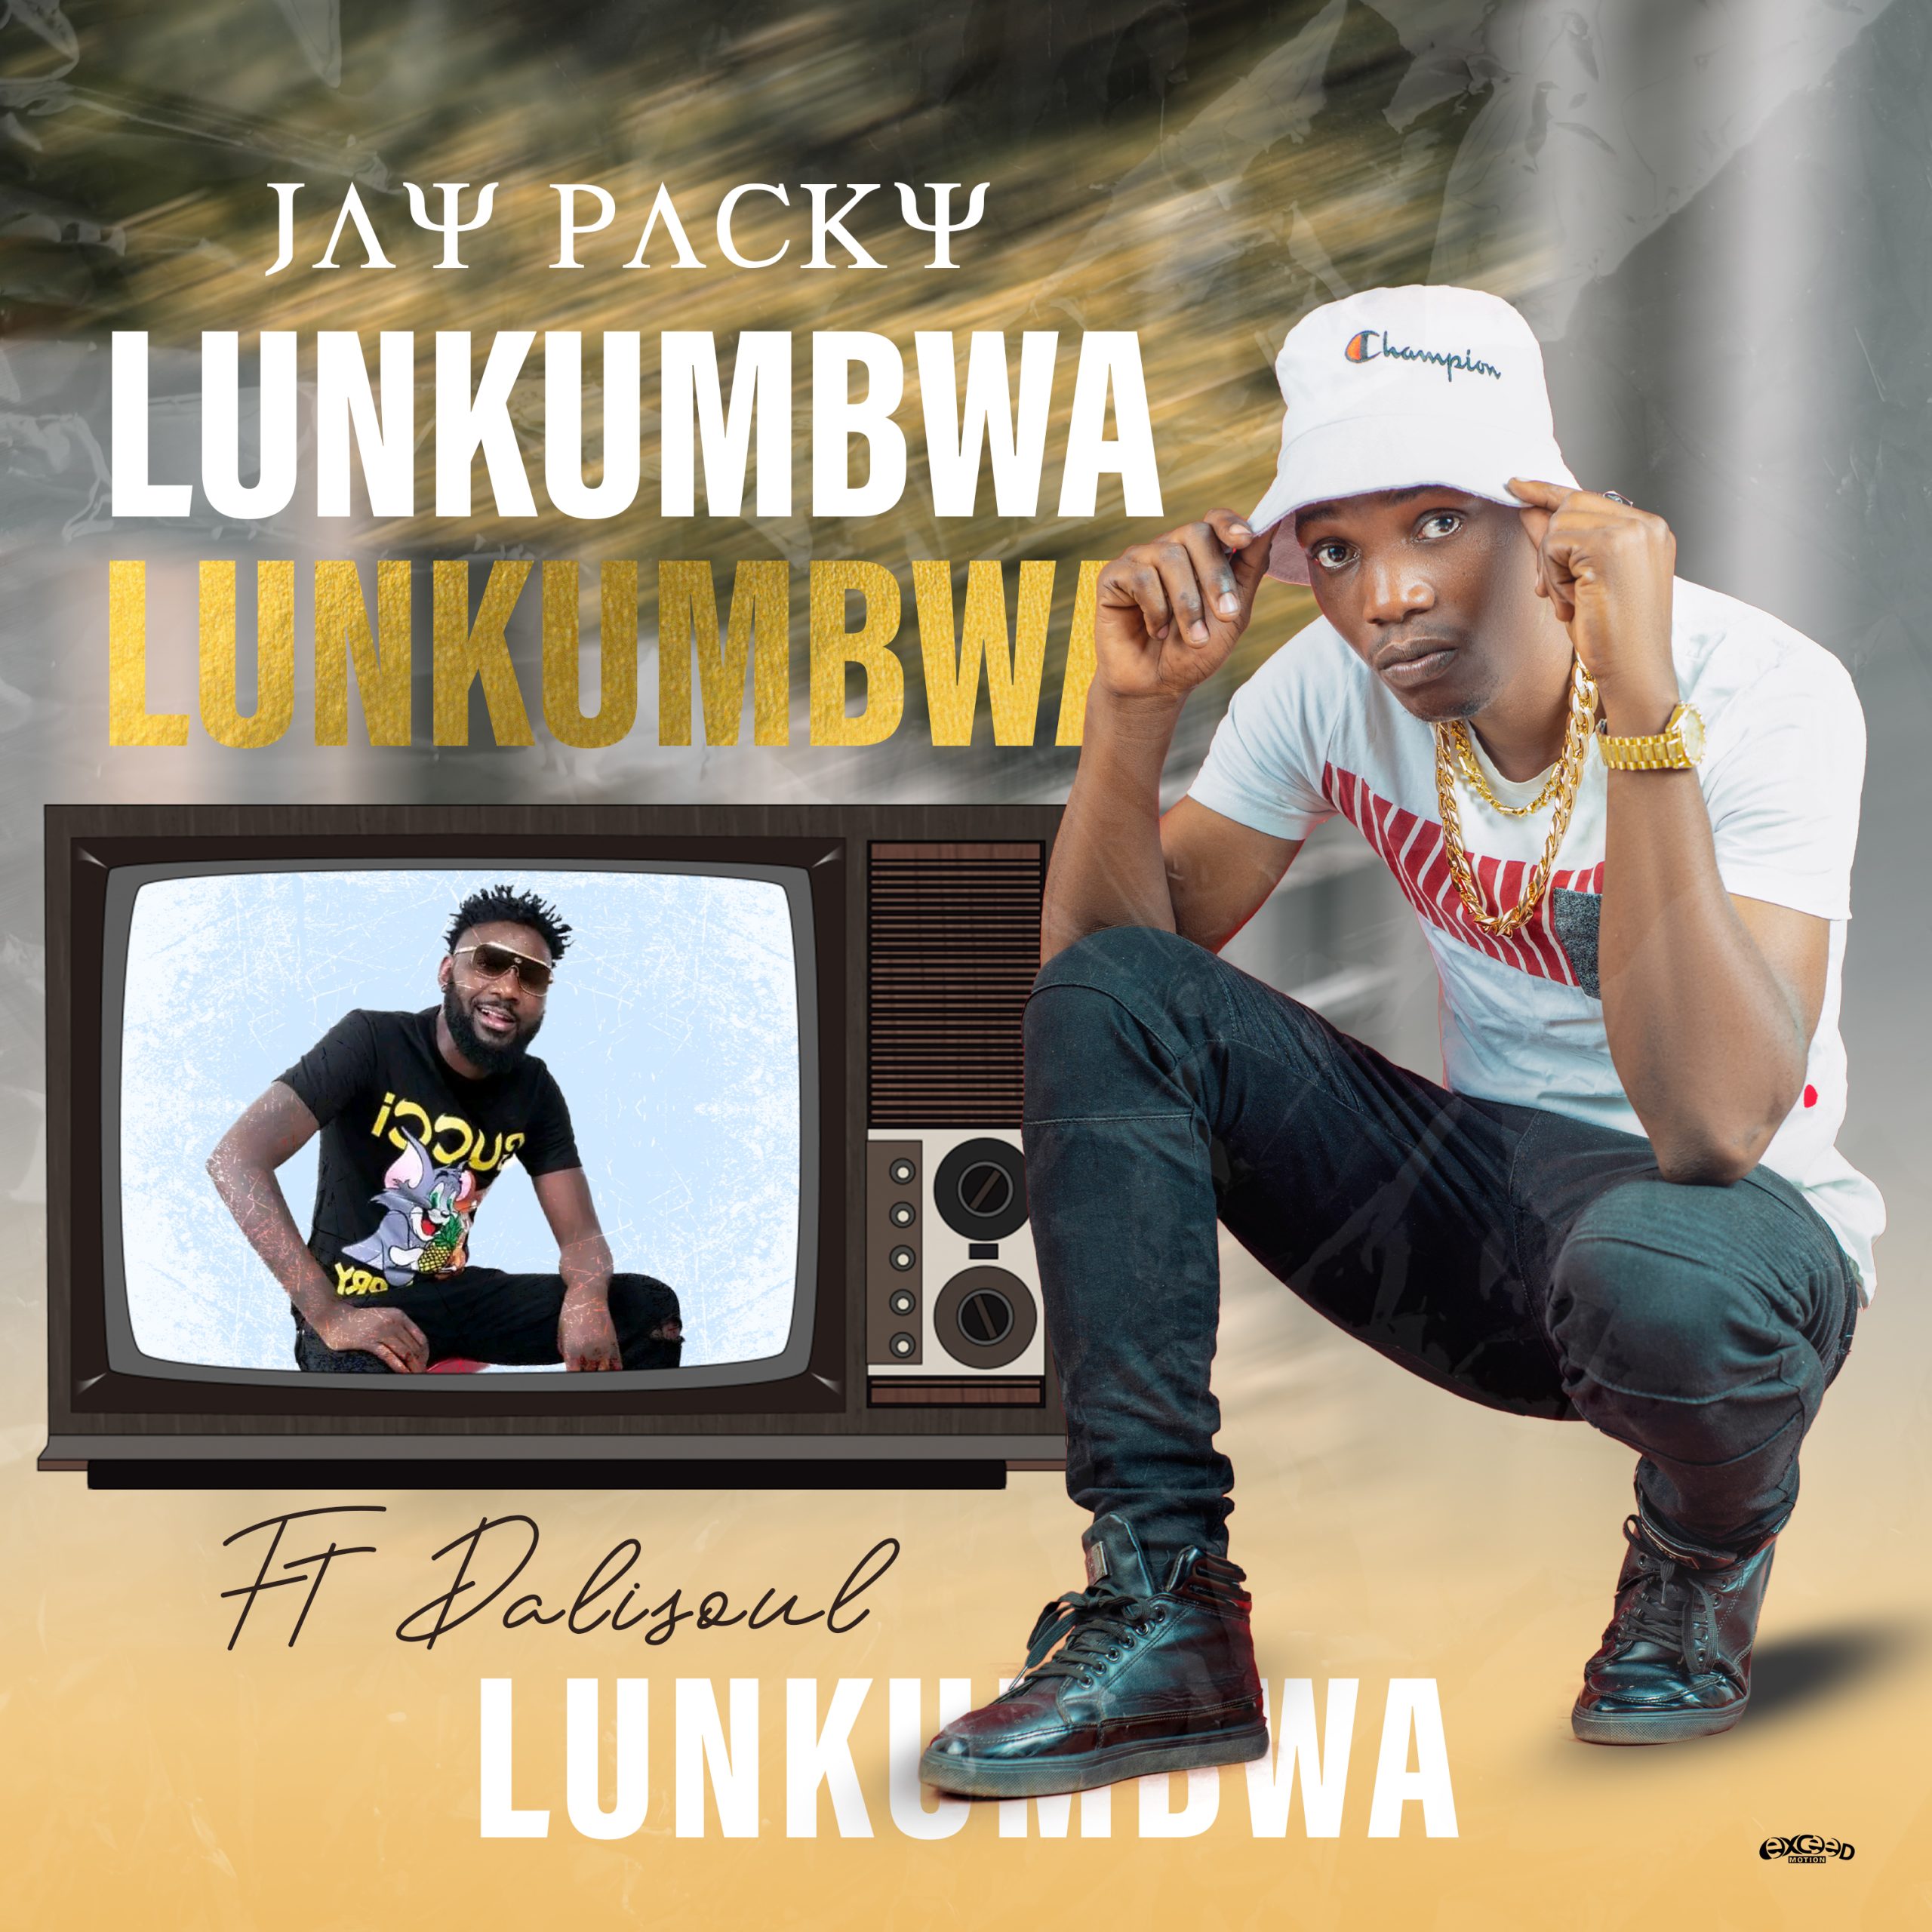 Jay Packy Ft. Dalisoul - Lunkumbwa Mp3 Download